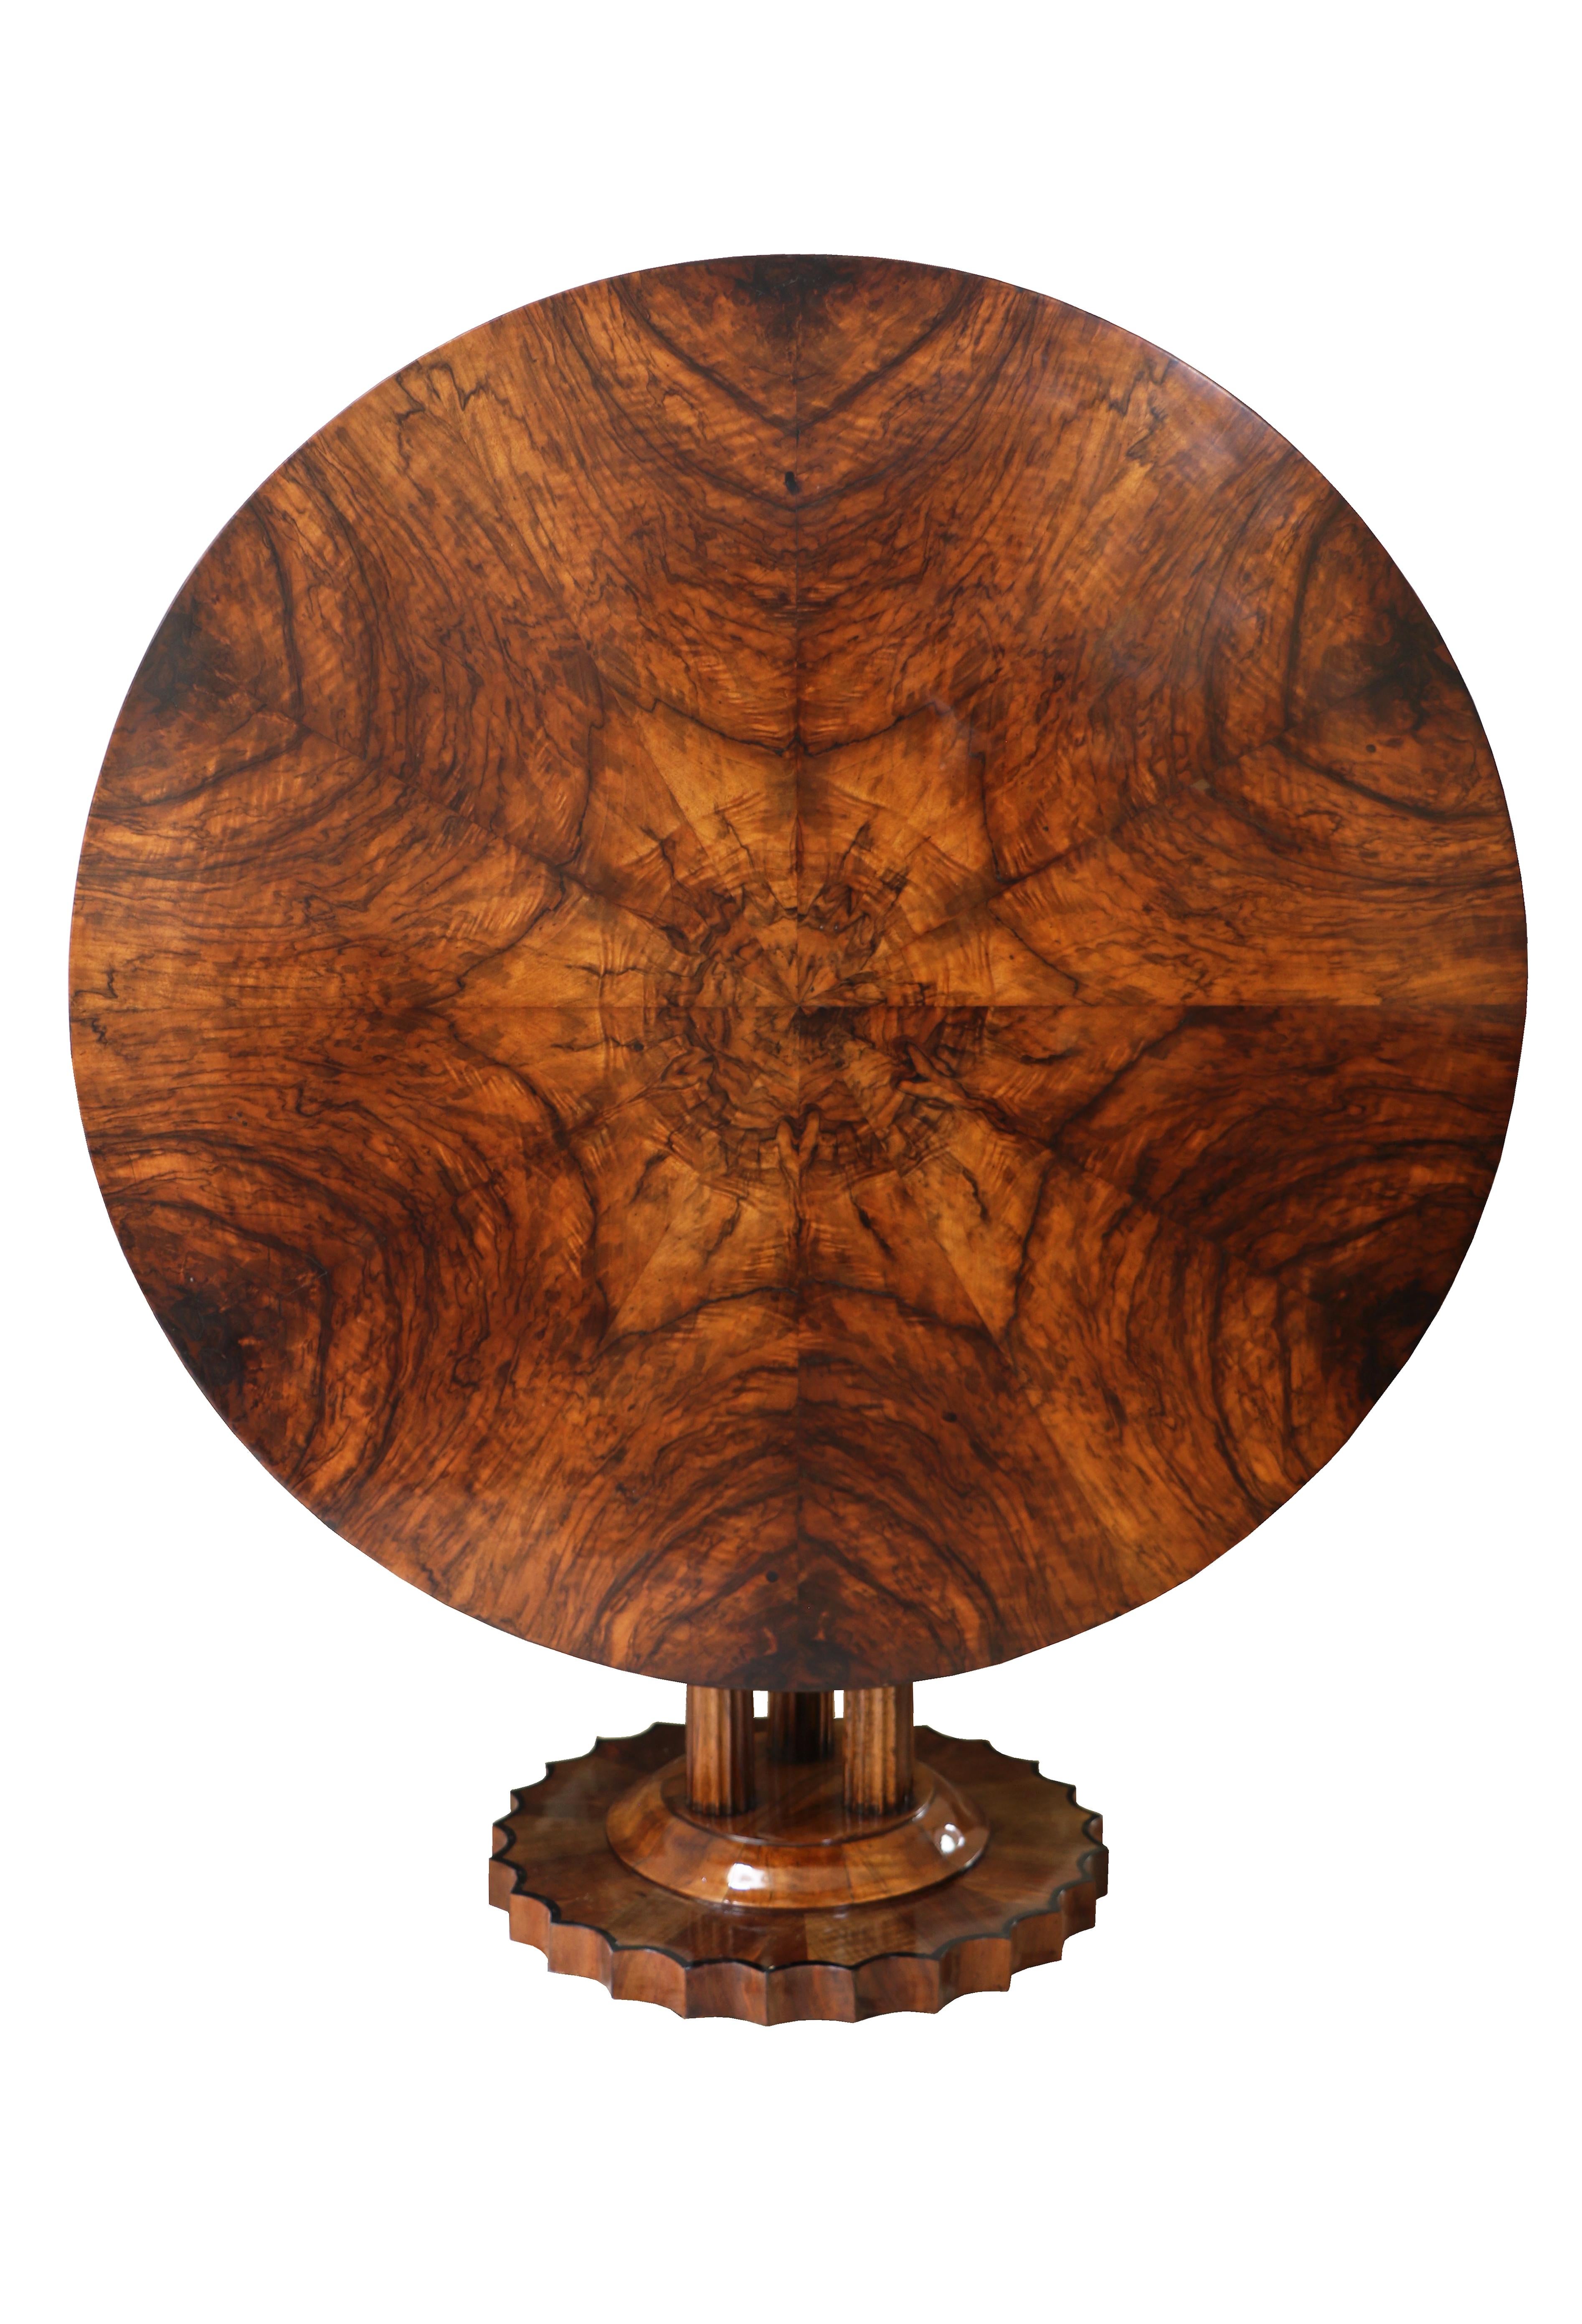 Hallo,

Dieser außergewöhnliche, große Biedermeier-Tisch aus Nussbaumholz wurde um 1825 in Wien hergestellt.

Die Stücke des Wiener Biedermeier zeichnen sich durch ihre raffinierten Proportionen, ihr seltenes und raffiniertes Design und ihre